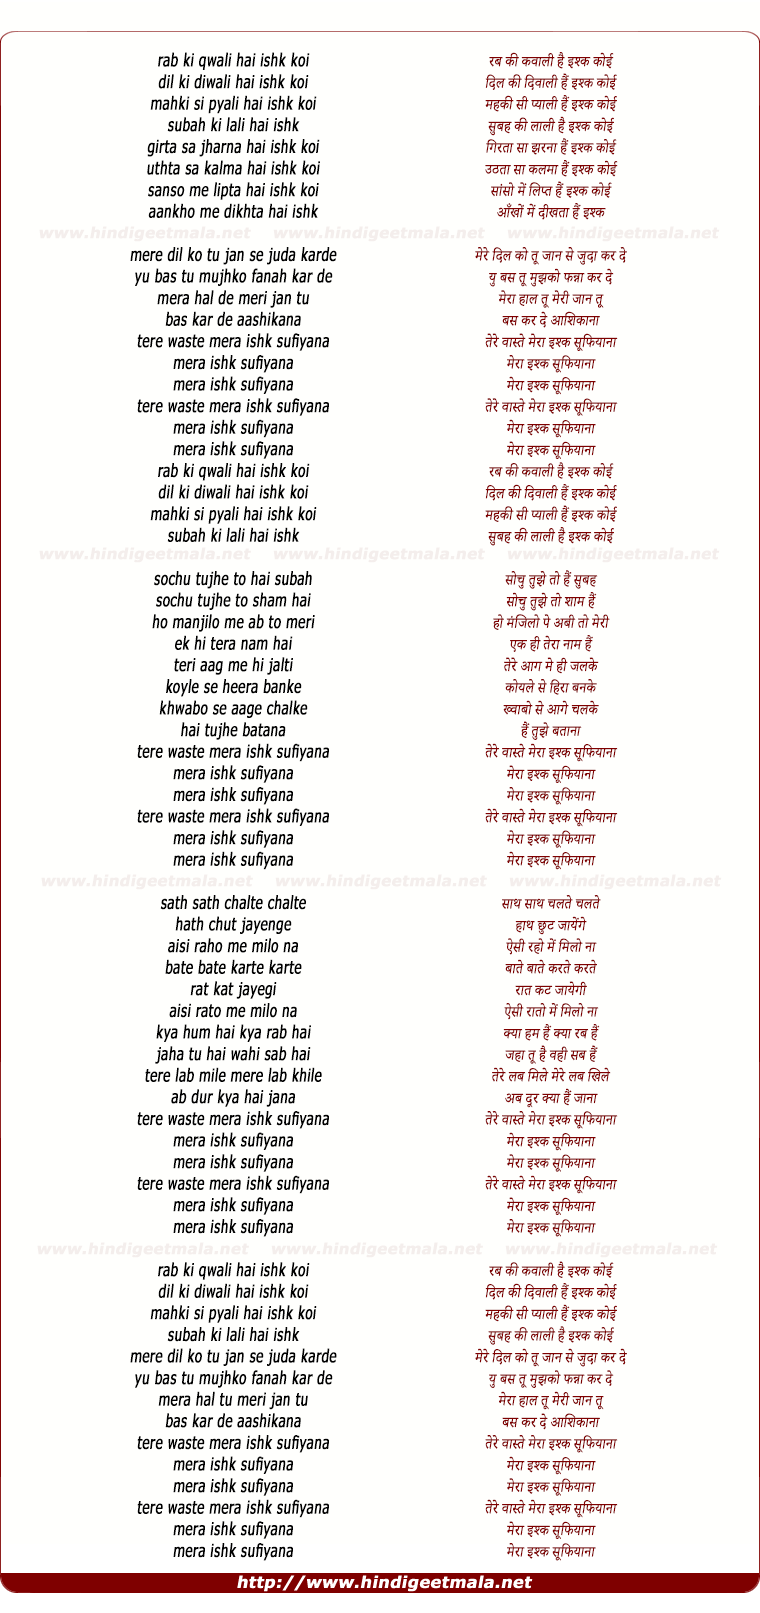 lyrics of song Ishq Sufiyana